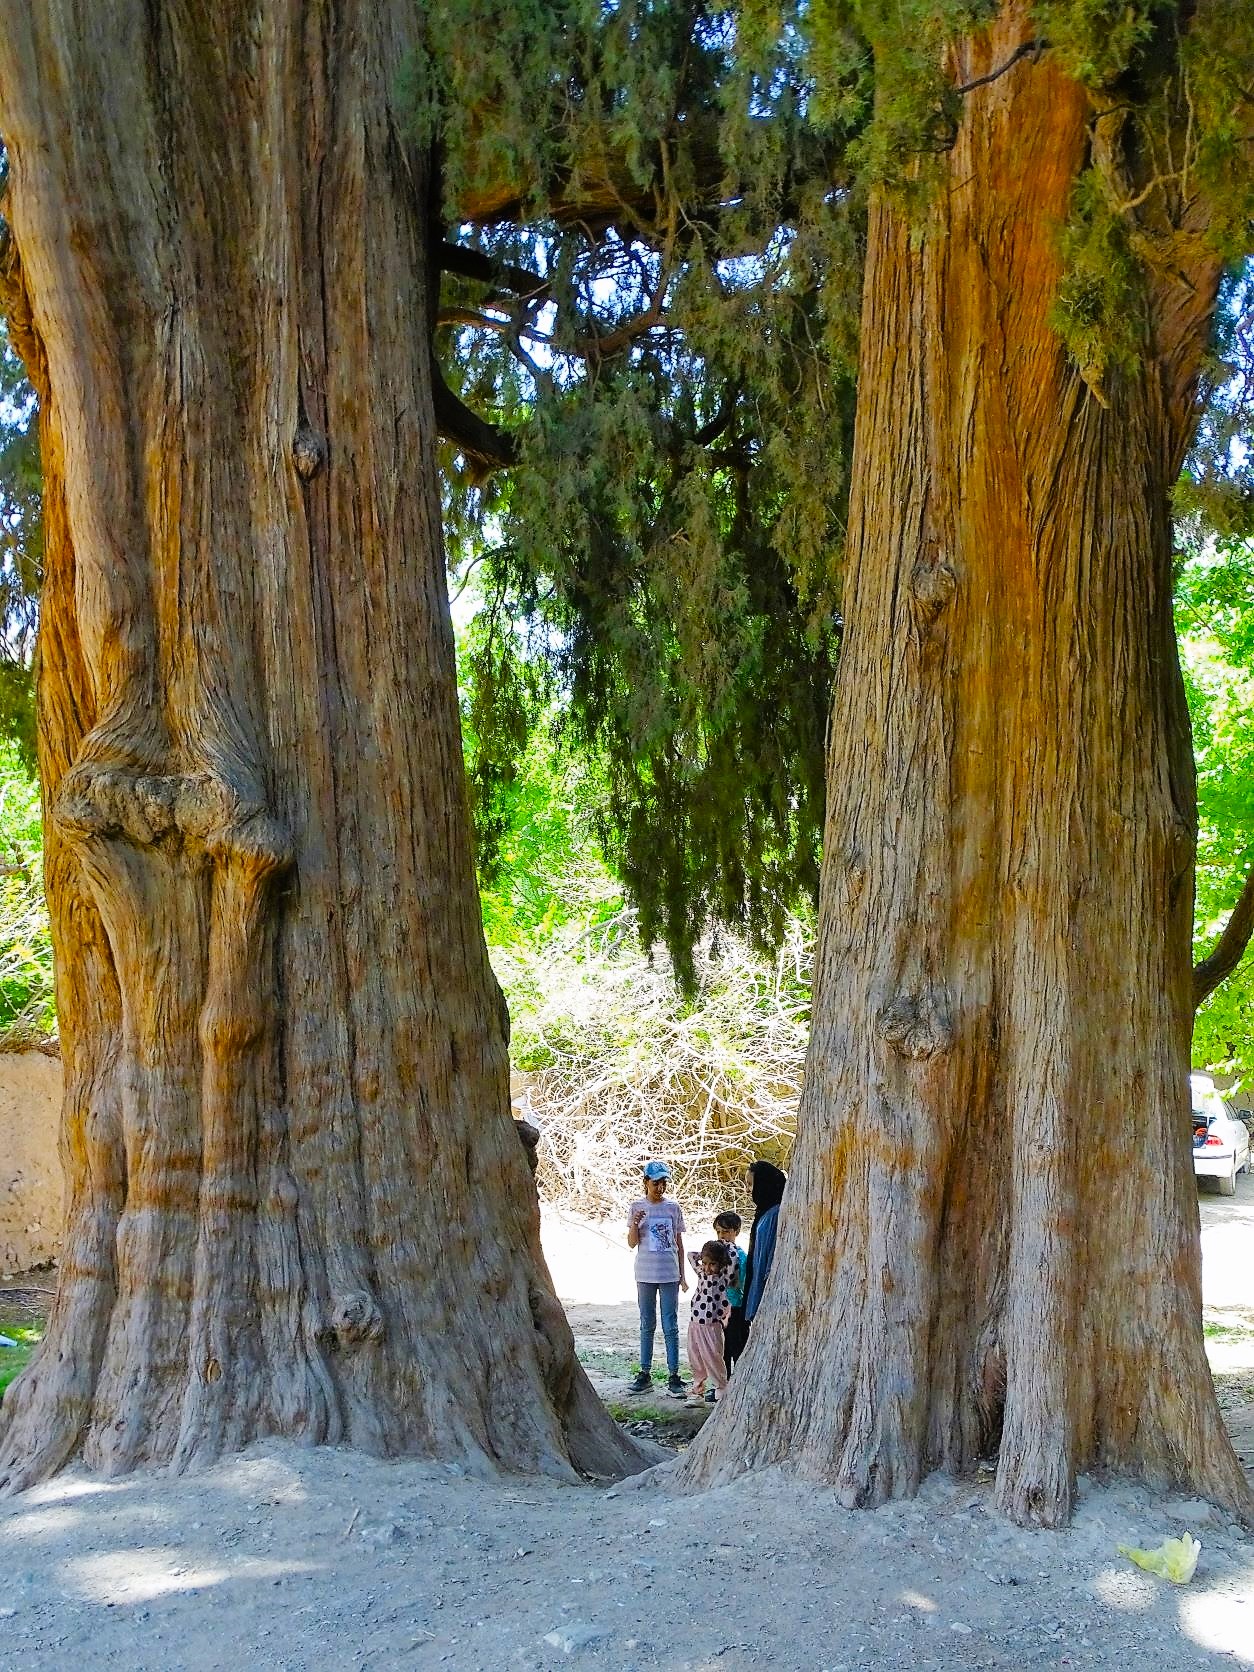 Twin Cedar Trees, Sirch Village, Kerman Province, Iran